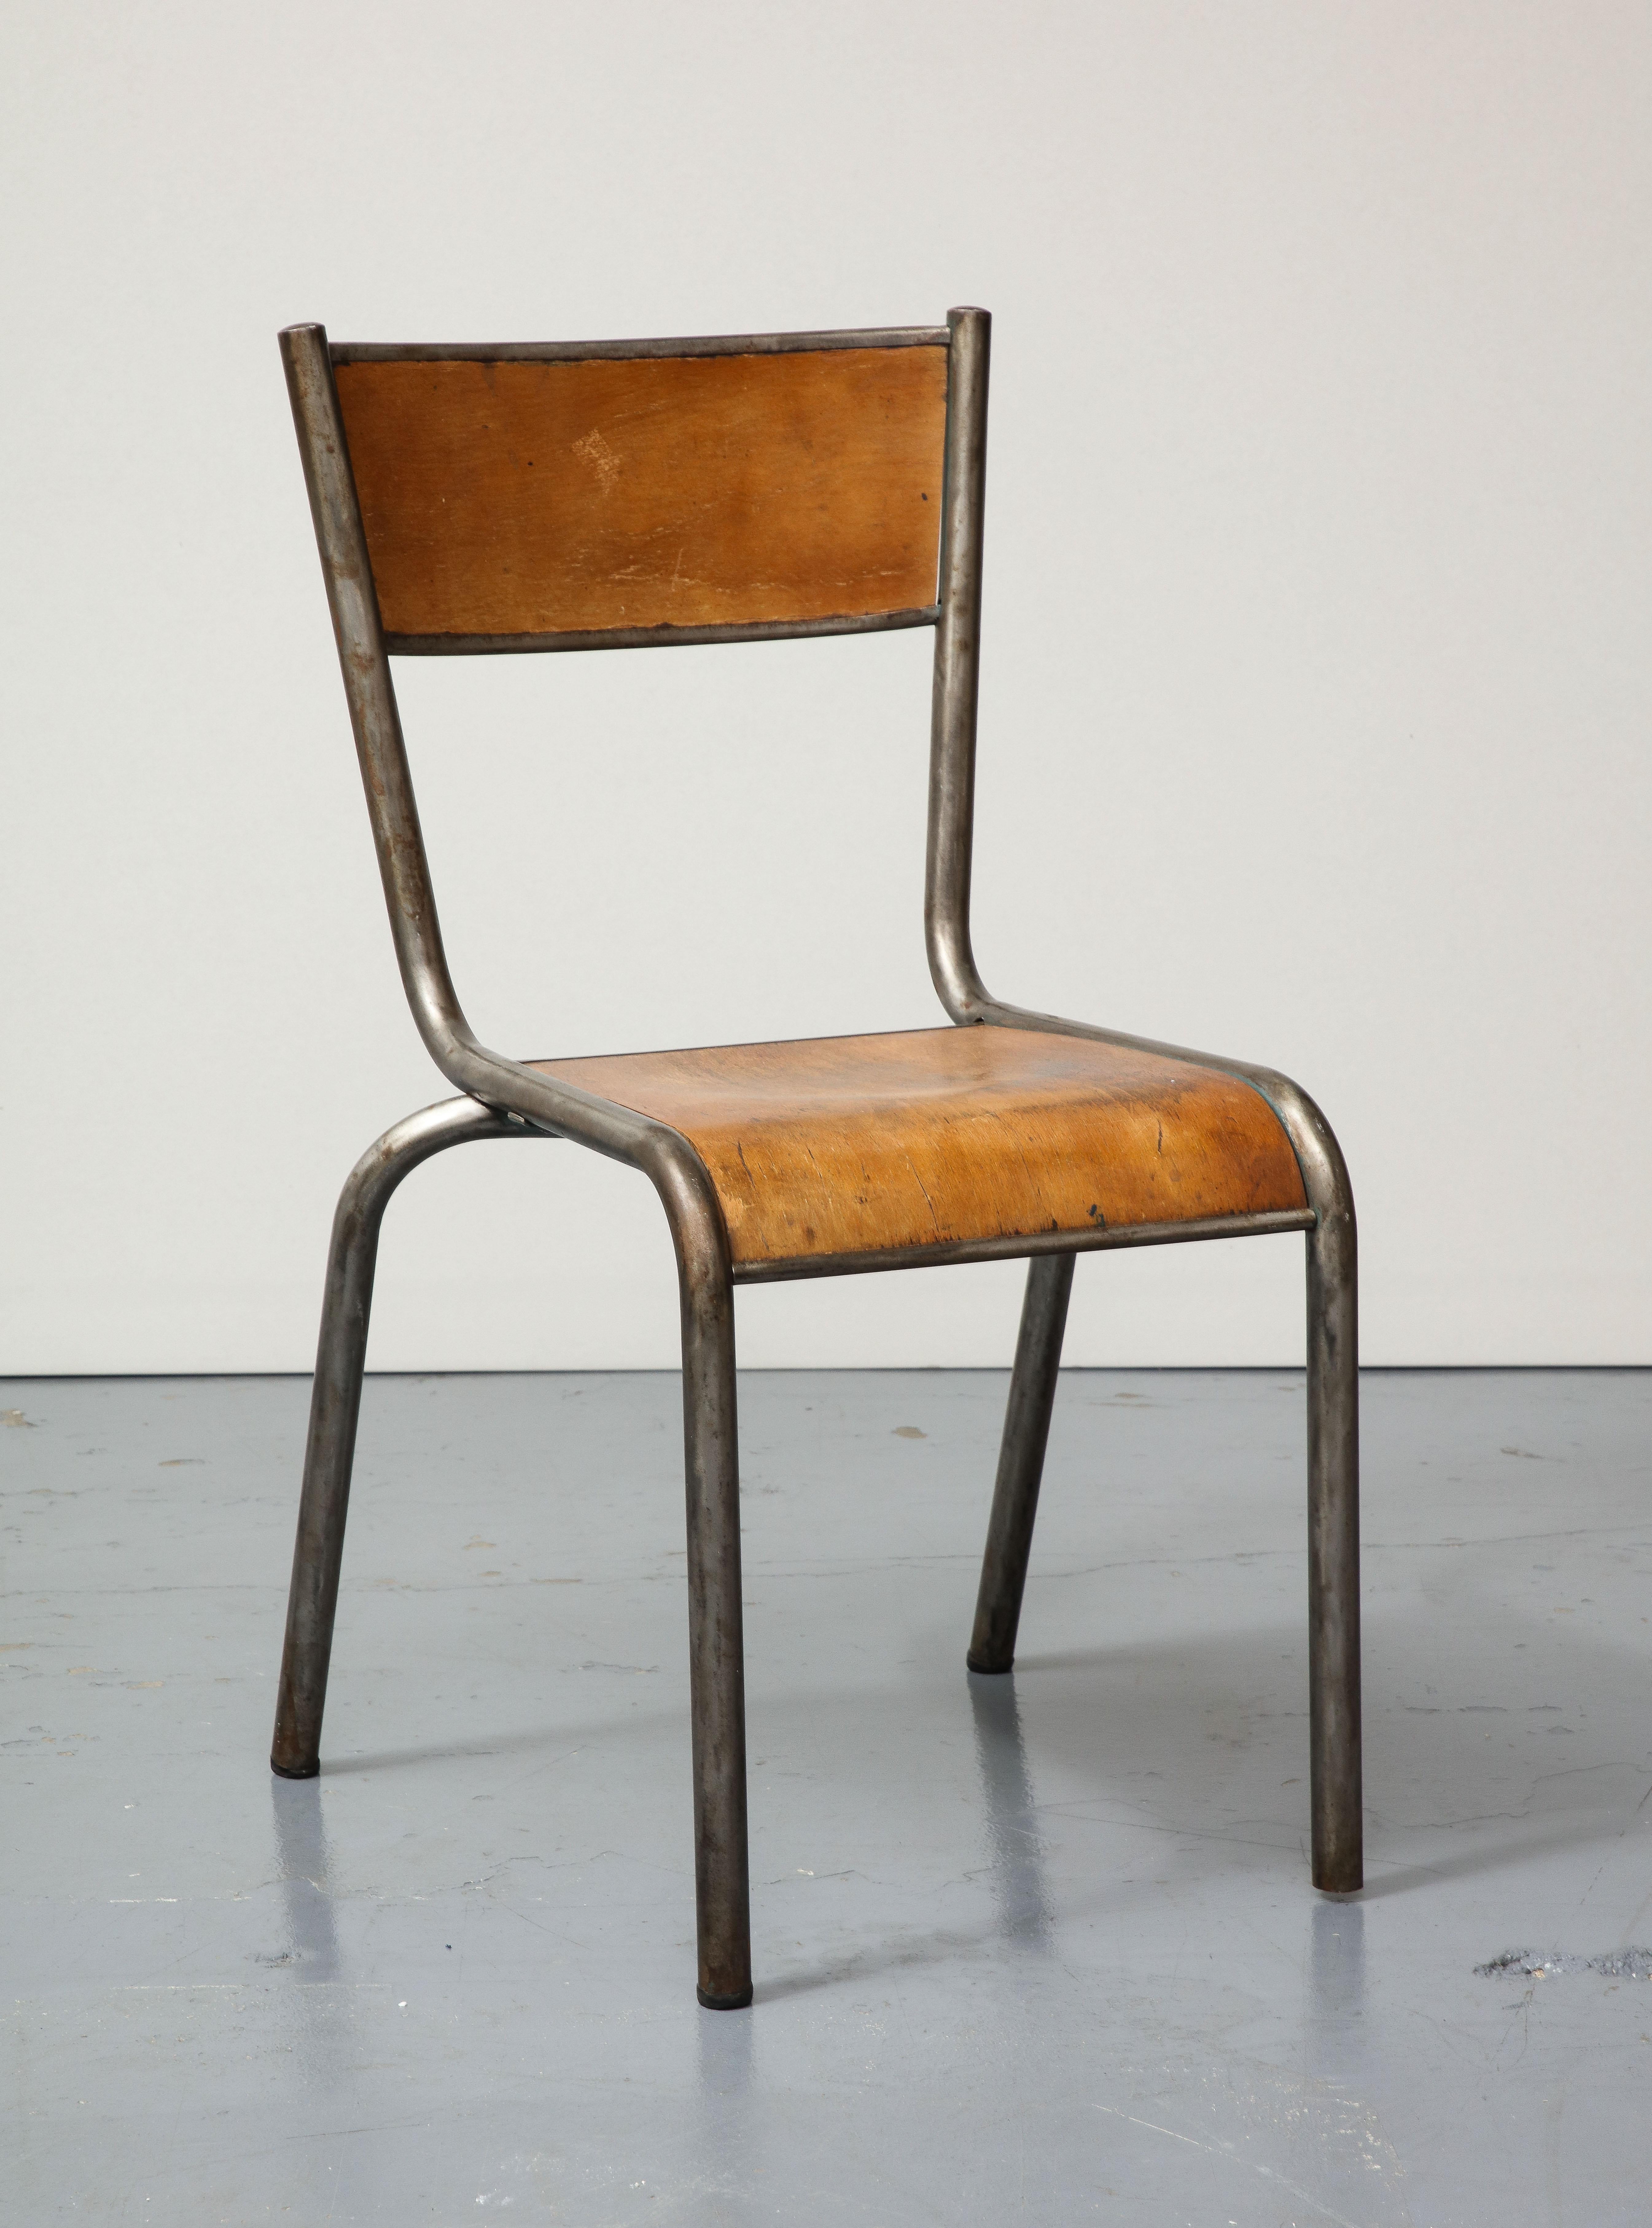 Zwei Stück verfügbar; Preis pro Stück.

Rustikaler, schön patinierter Stuhl aus Stahlrohr und gebogenem Holz.